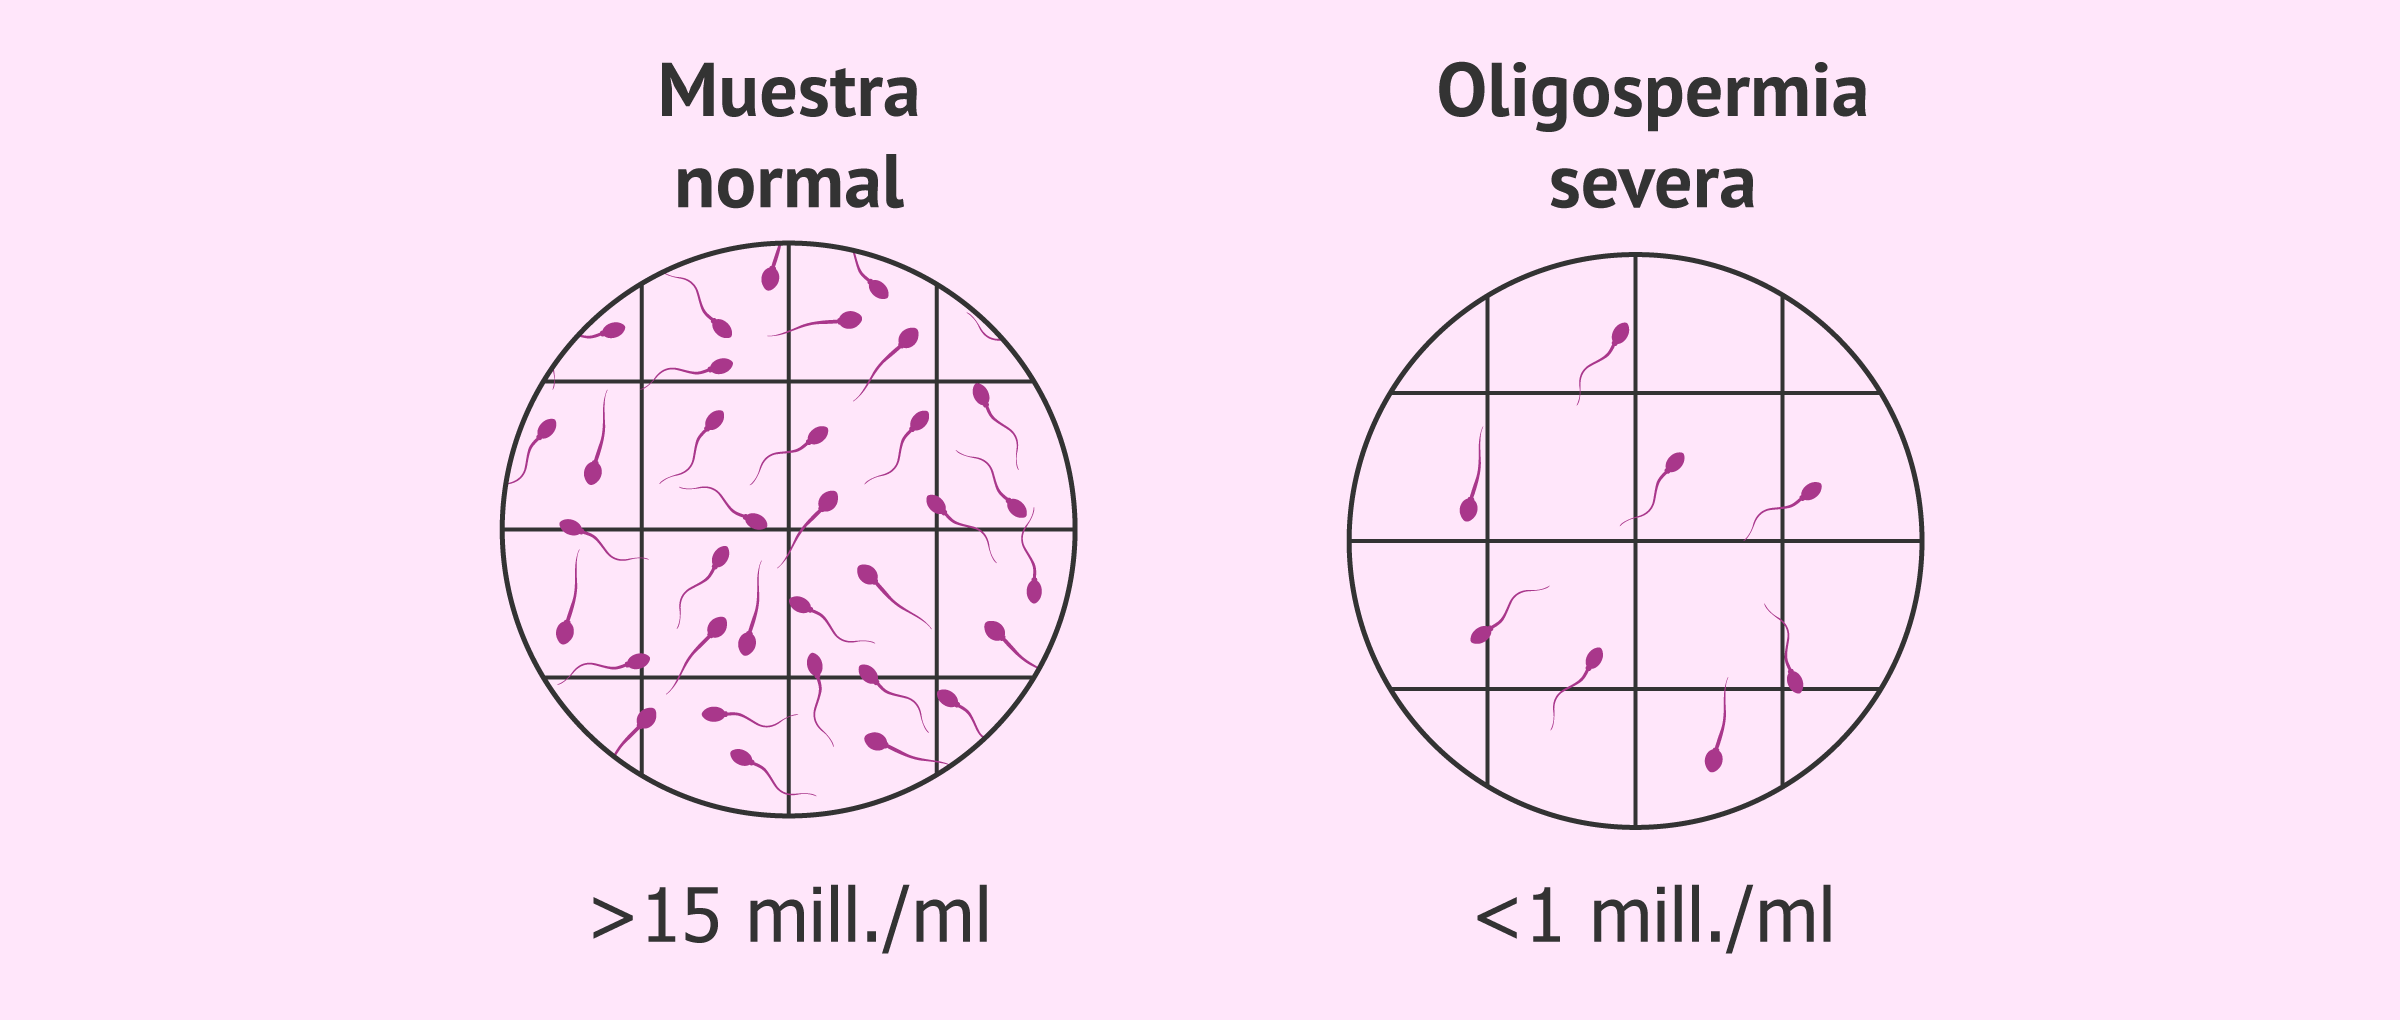 La oligospermia severa